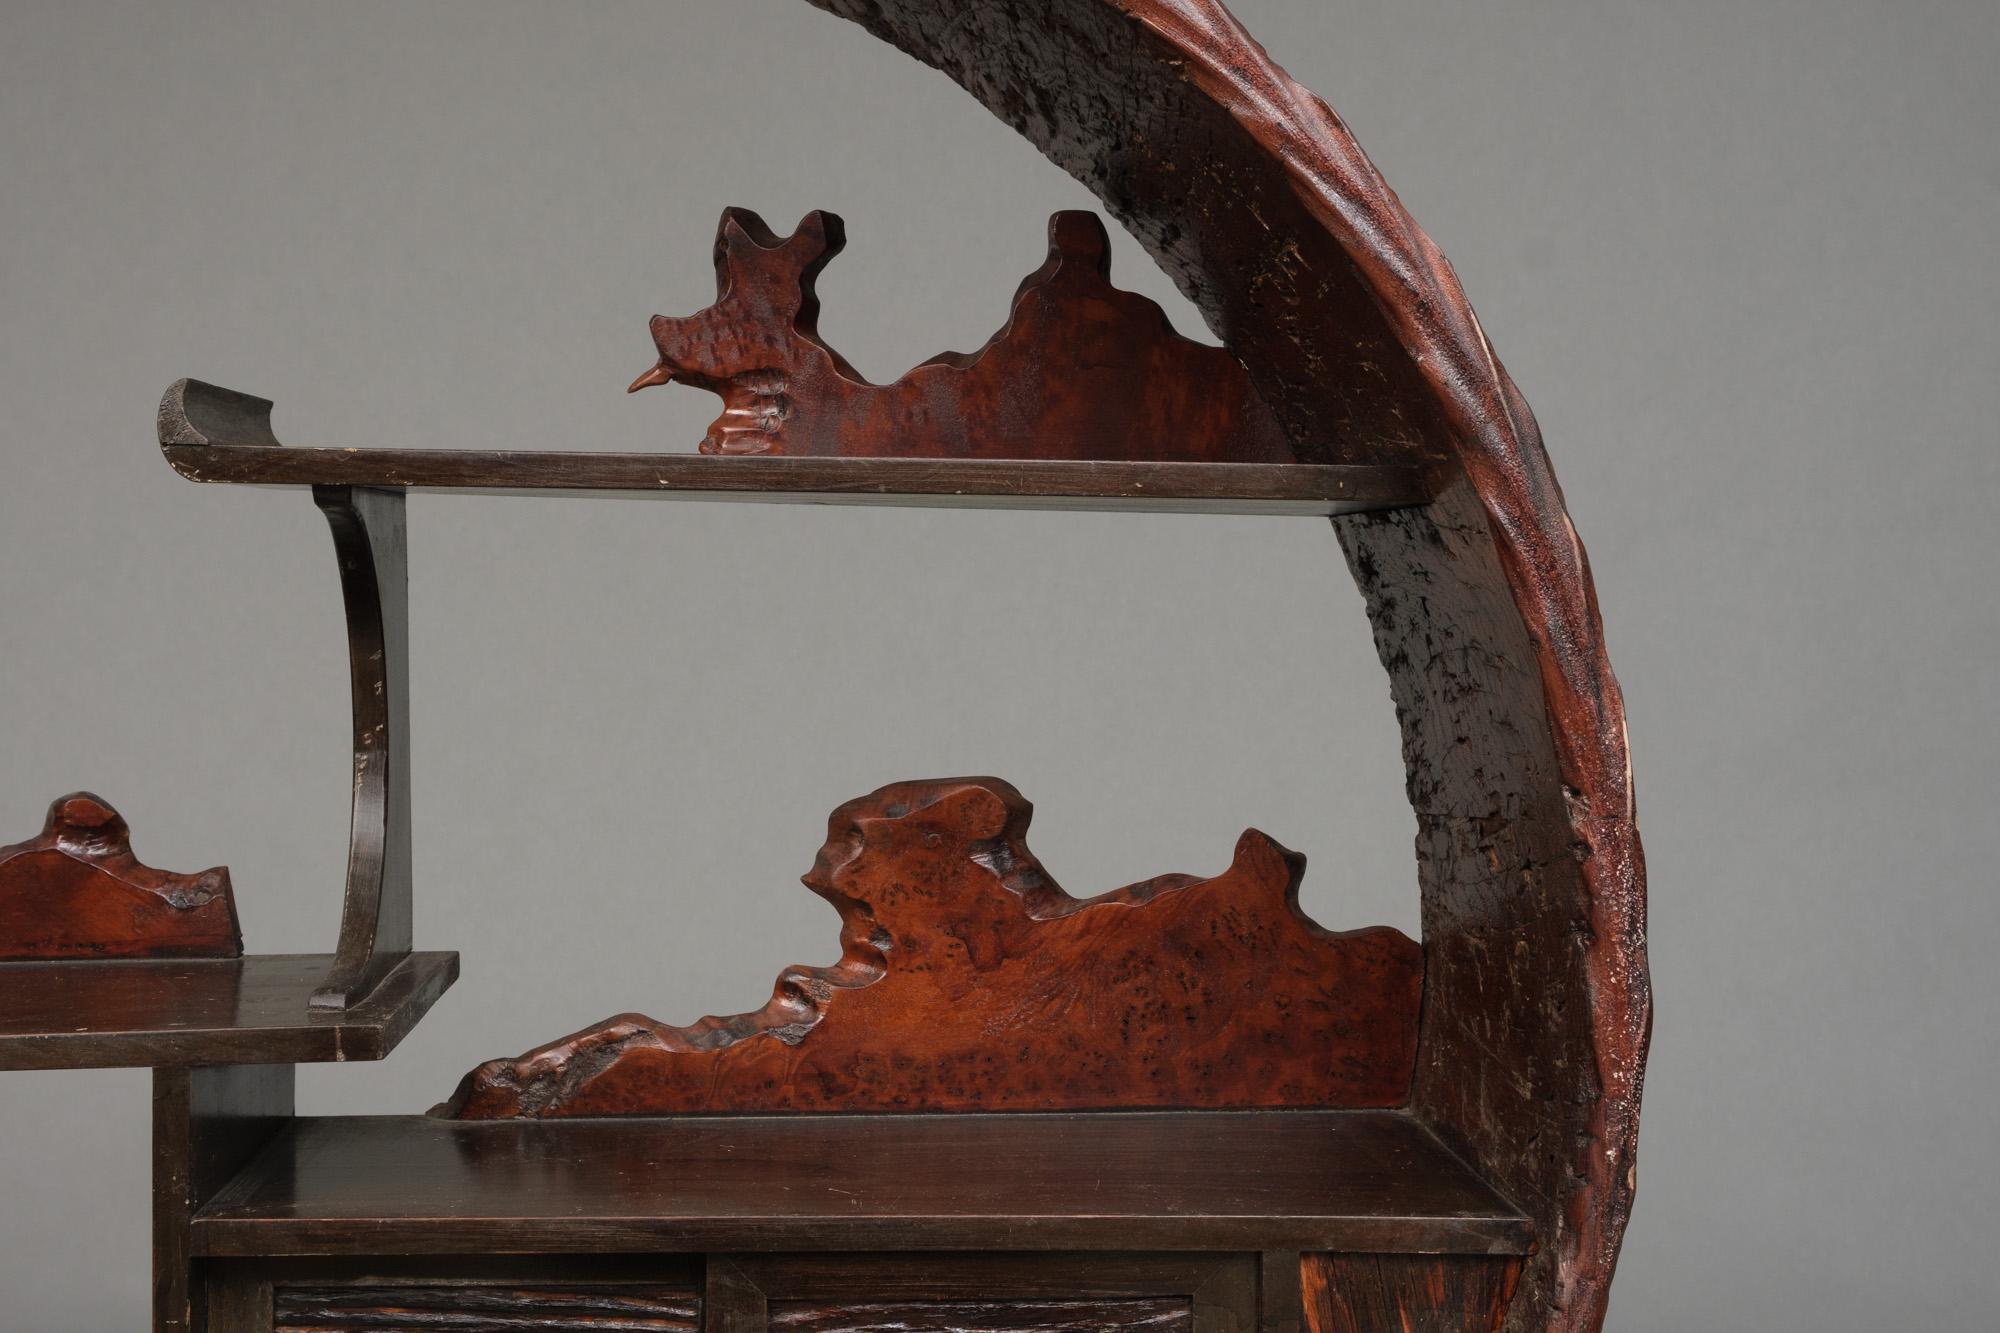 Unique et magnifique chadansu 茶箪笥 (cabinet de thé) en bois rond, fabriqué à partir d'un tronc d'arbre creux. Placé sur une belle organiquement formé trois racine.

L'extérieur de la vitrine a un aspect naturel étonnant. Les étagères en quinconce